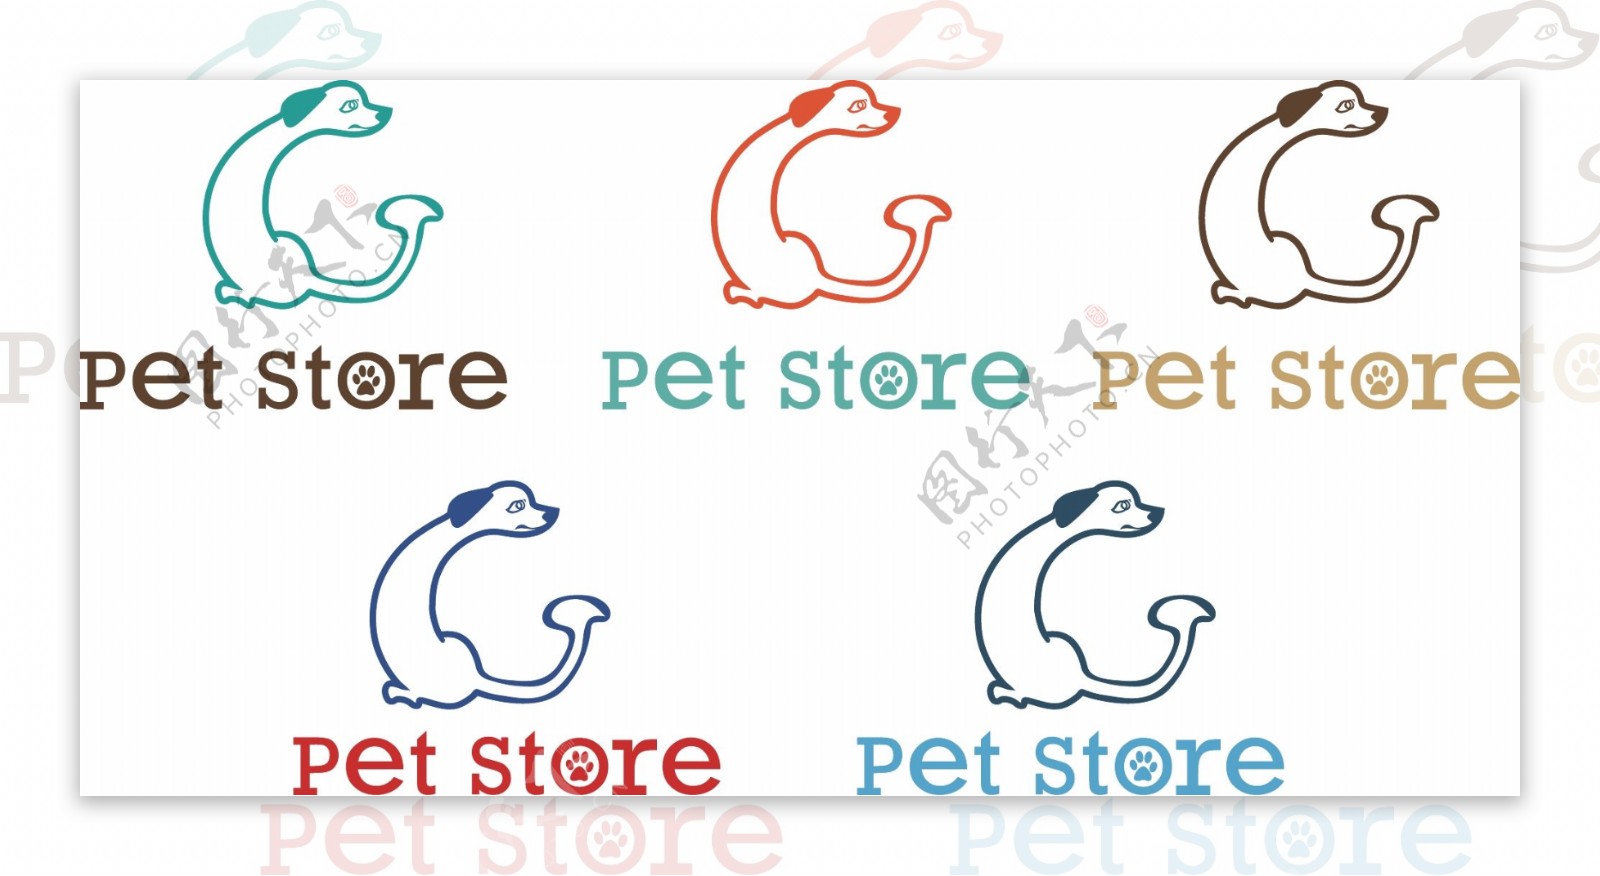 宠物店logo多种配色运用